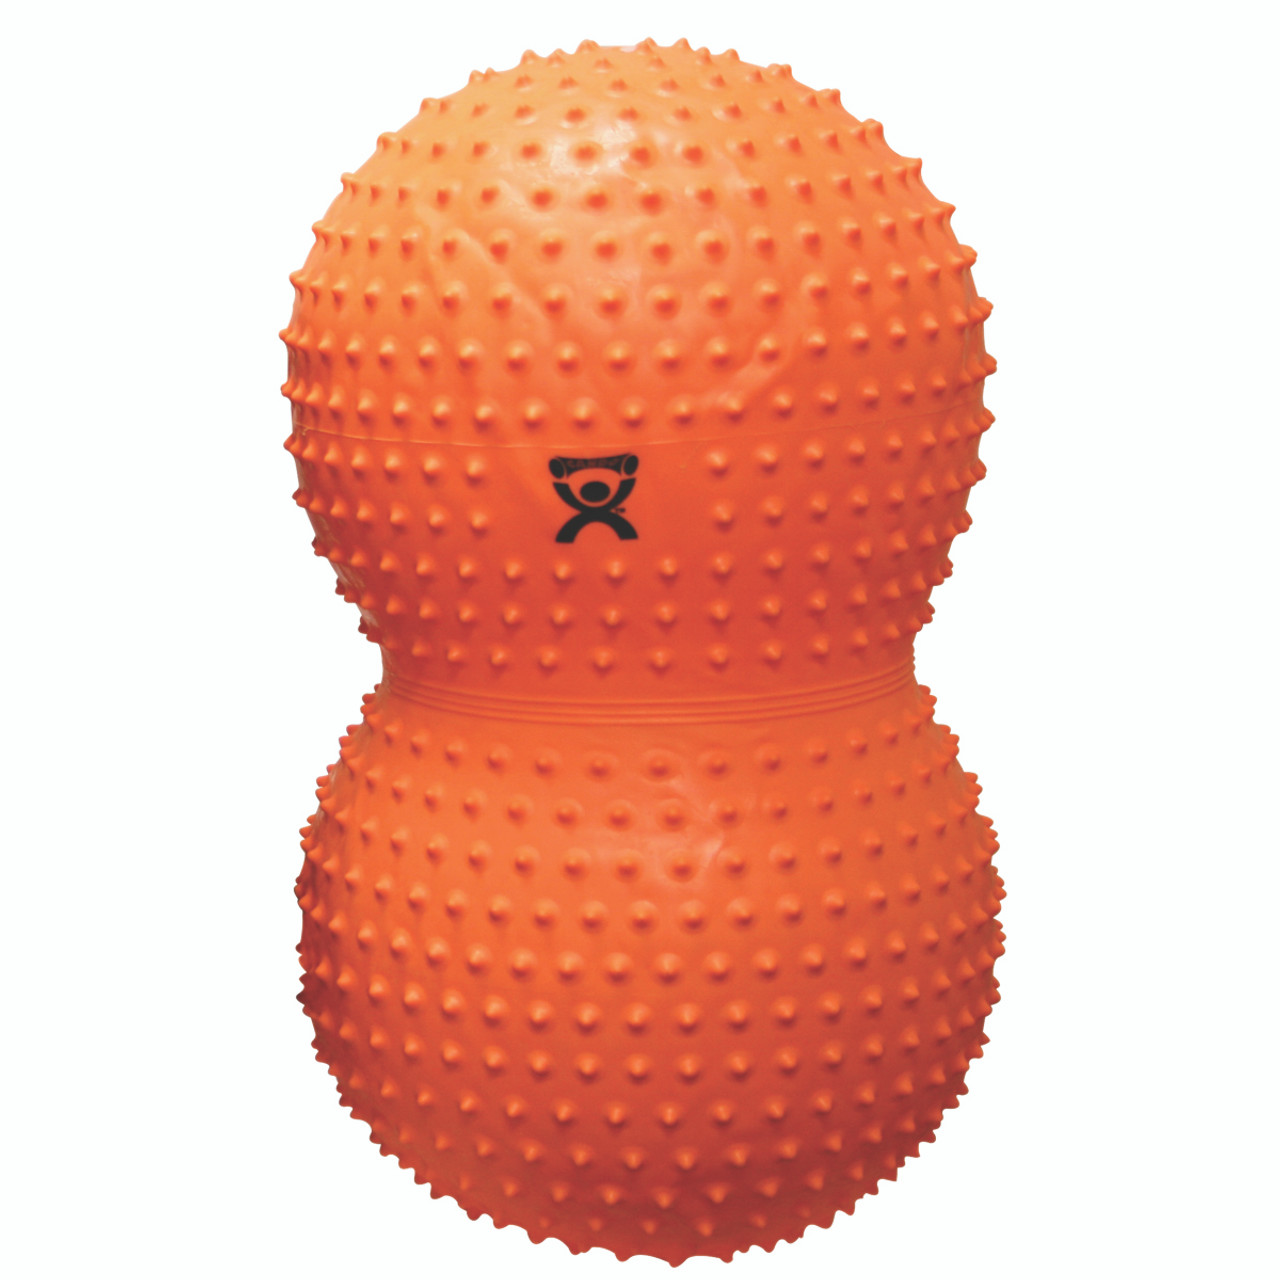 CanDo¨ Inflatable Exercise Sensi-Saddle Roll - Orange - 20" Dia x 39" L (50 cm Dia x 100 cm L)